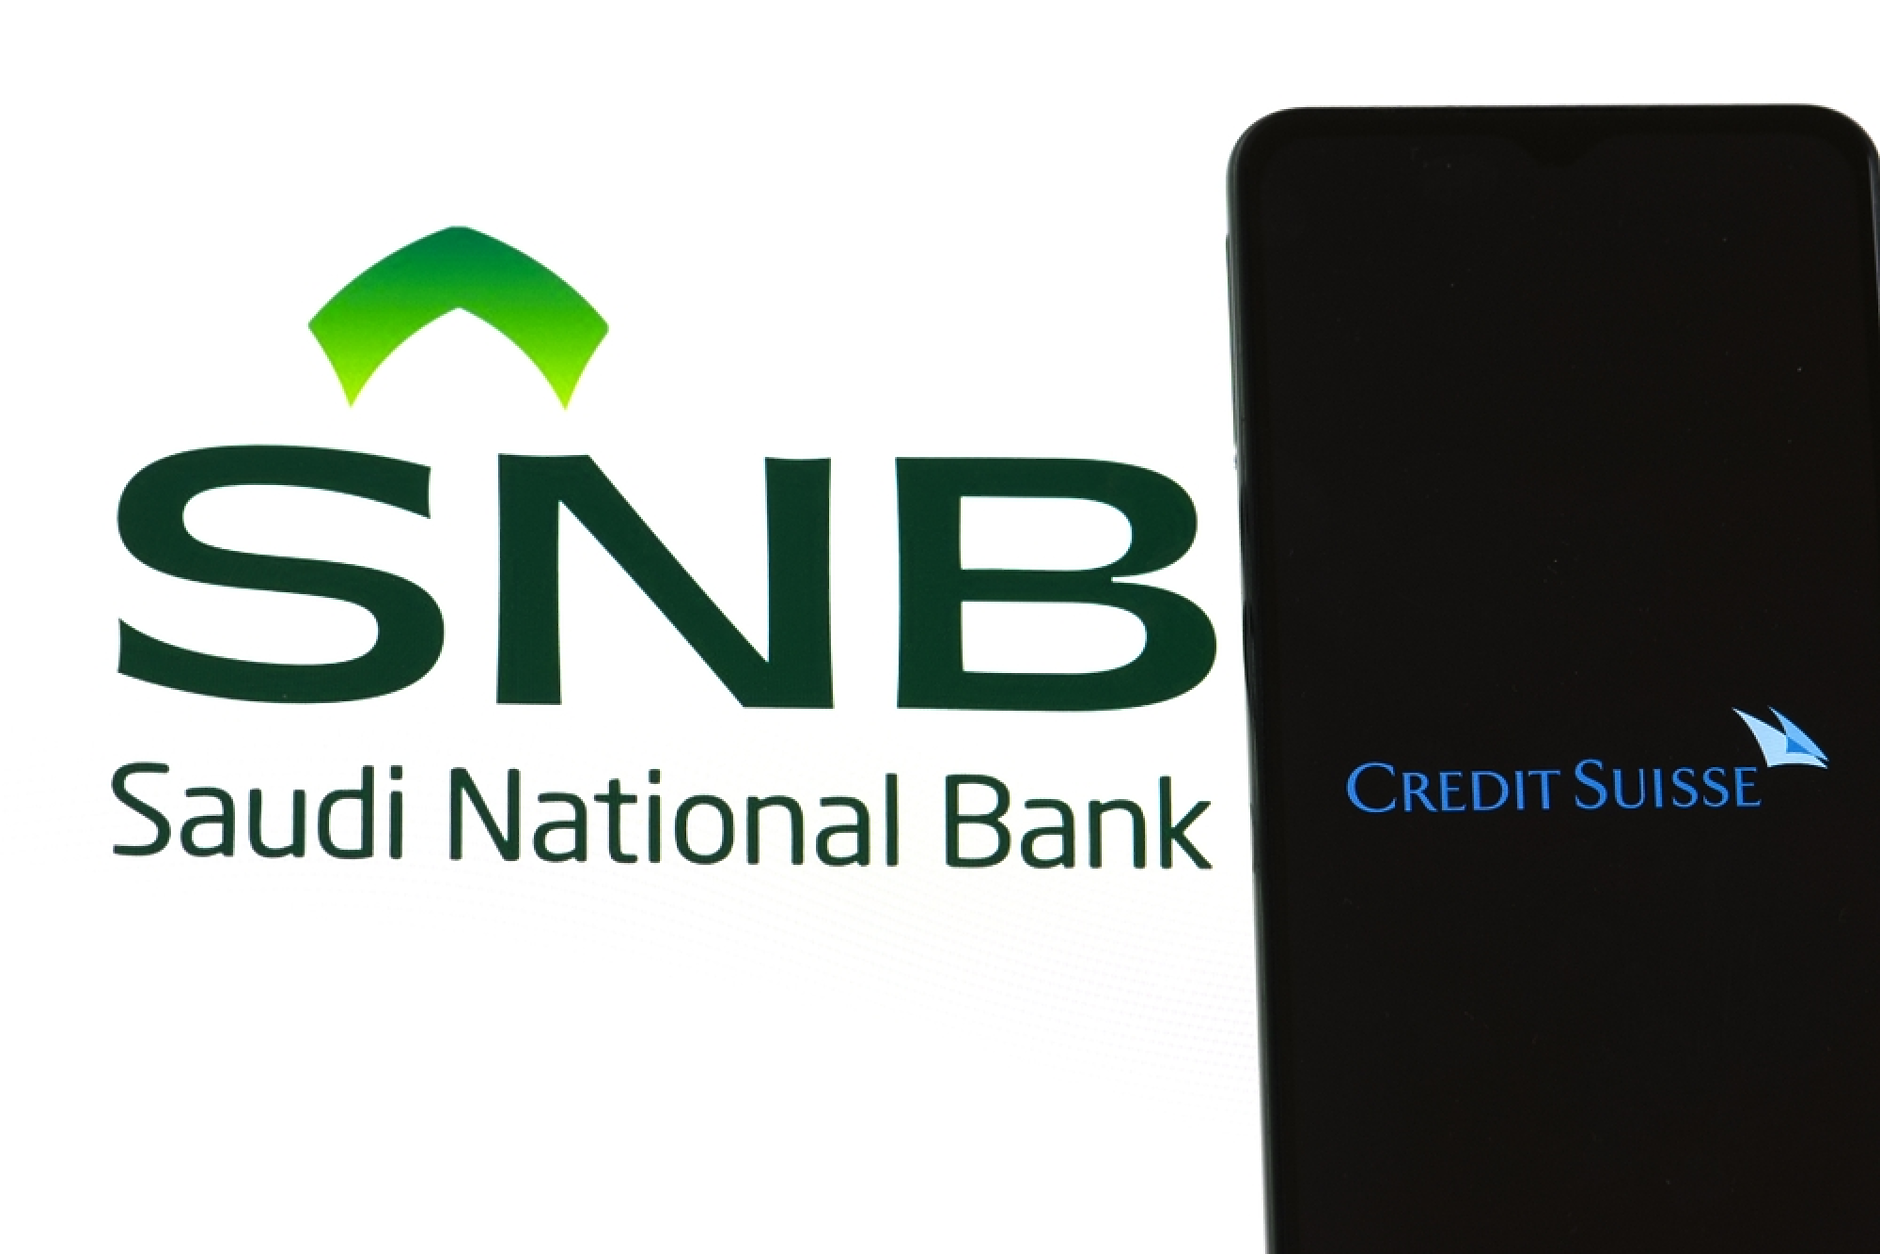 Председателят на Саудитската национална банка подаде оставка заради кризата с Credit Suisse